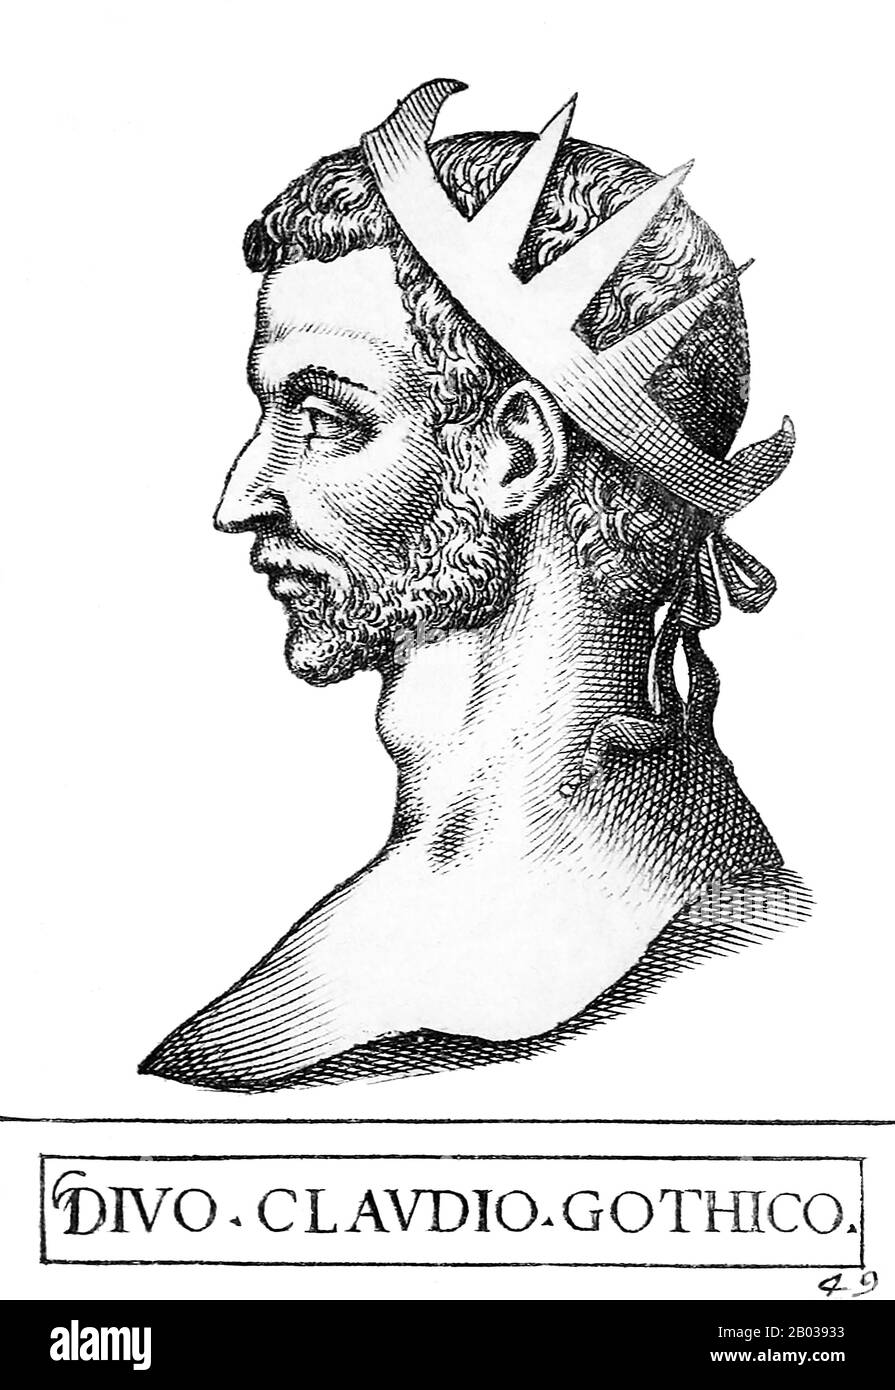 Claudius II (210-270), auch Claudius Gothicus genannt, war illyrischen Ursprungs und barbarischer Geburt. Er war Berufssoldat, er diente sein ganzes Erwachsenenleben in der römischen Armee. Er war während der Belagerung von Mailand im Jahr 268 Militärdreibund in der Armee von Kaiser Gallienus, als Gallienus von seinen eigenen fünfzialen, möglicherweise einschließlich Claudius, ermordet wurde. Claudius wurde dann von seinen eigenen Soldaten, möglicherweise wegen seiner körperlichen Stärke und Grausamkeit, zum Kaiser ausgerufen. Claudius war wie der vorherige barbarische Kaiser Maximinus Thrax ein Soldatenkaiser, der erste in einer Serie, die das Reich wieder herstellen sollte Stockfoto